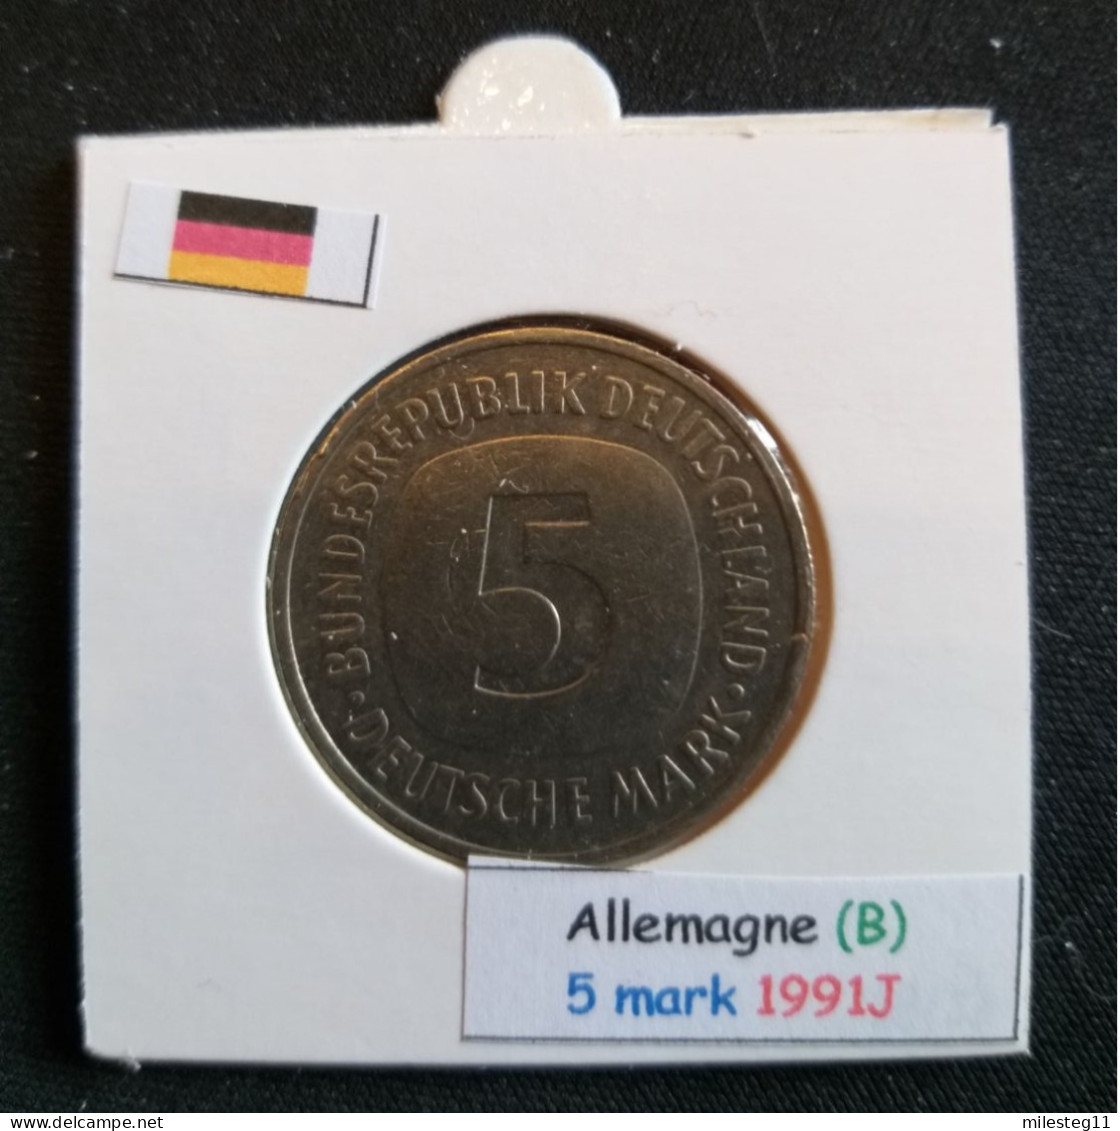 Allemagne 5 Mark 1991J Position B - 5 Mark